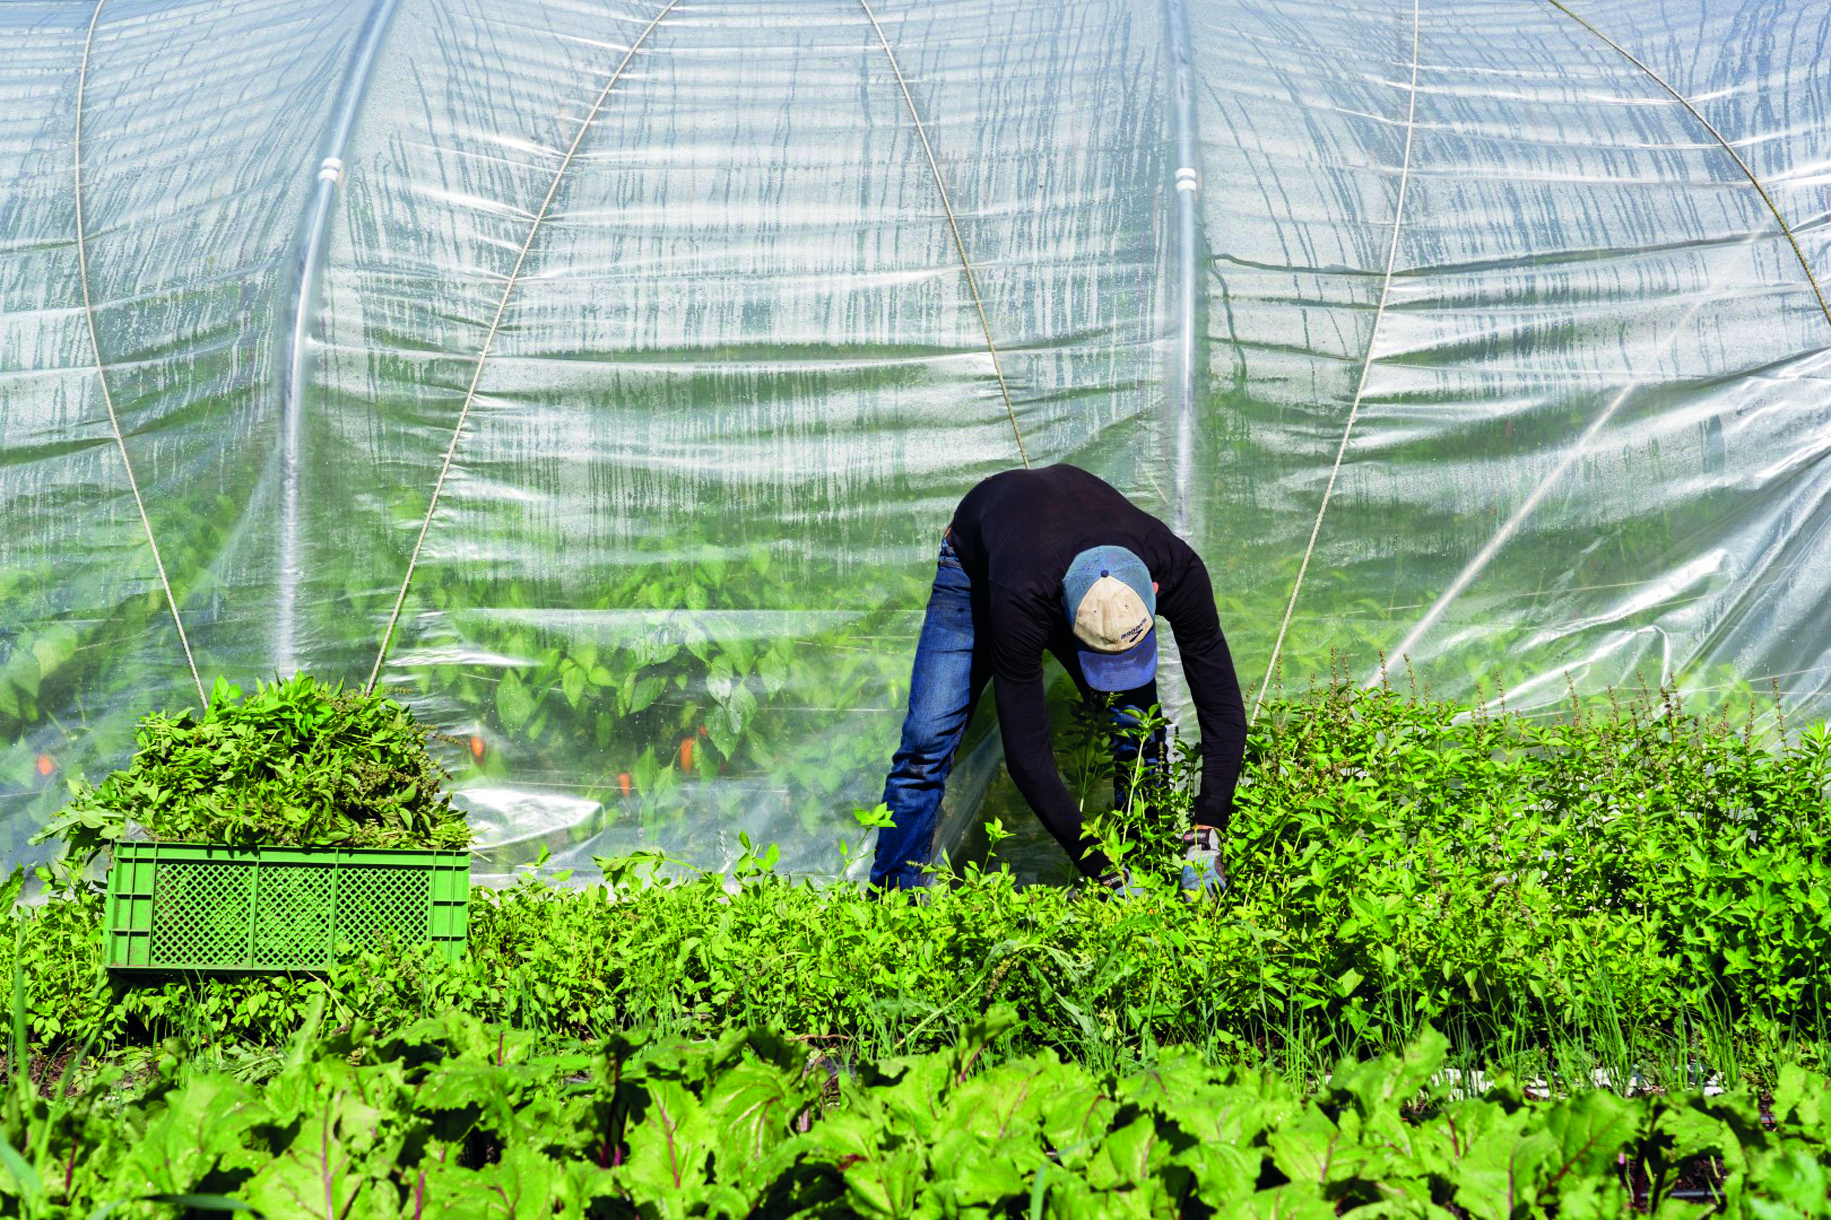   Feingemüse | Die Gärtnerei Korn in Wiederitzsch betreibt Mikrolandwirtschaft  